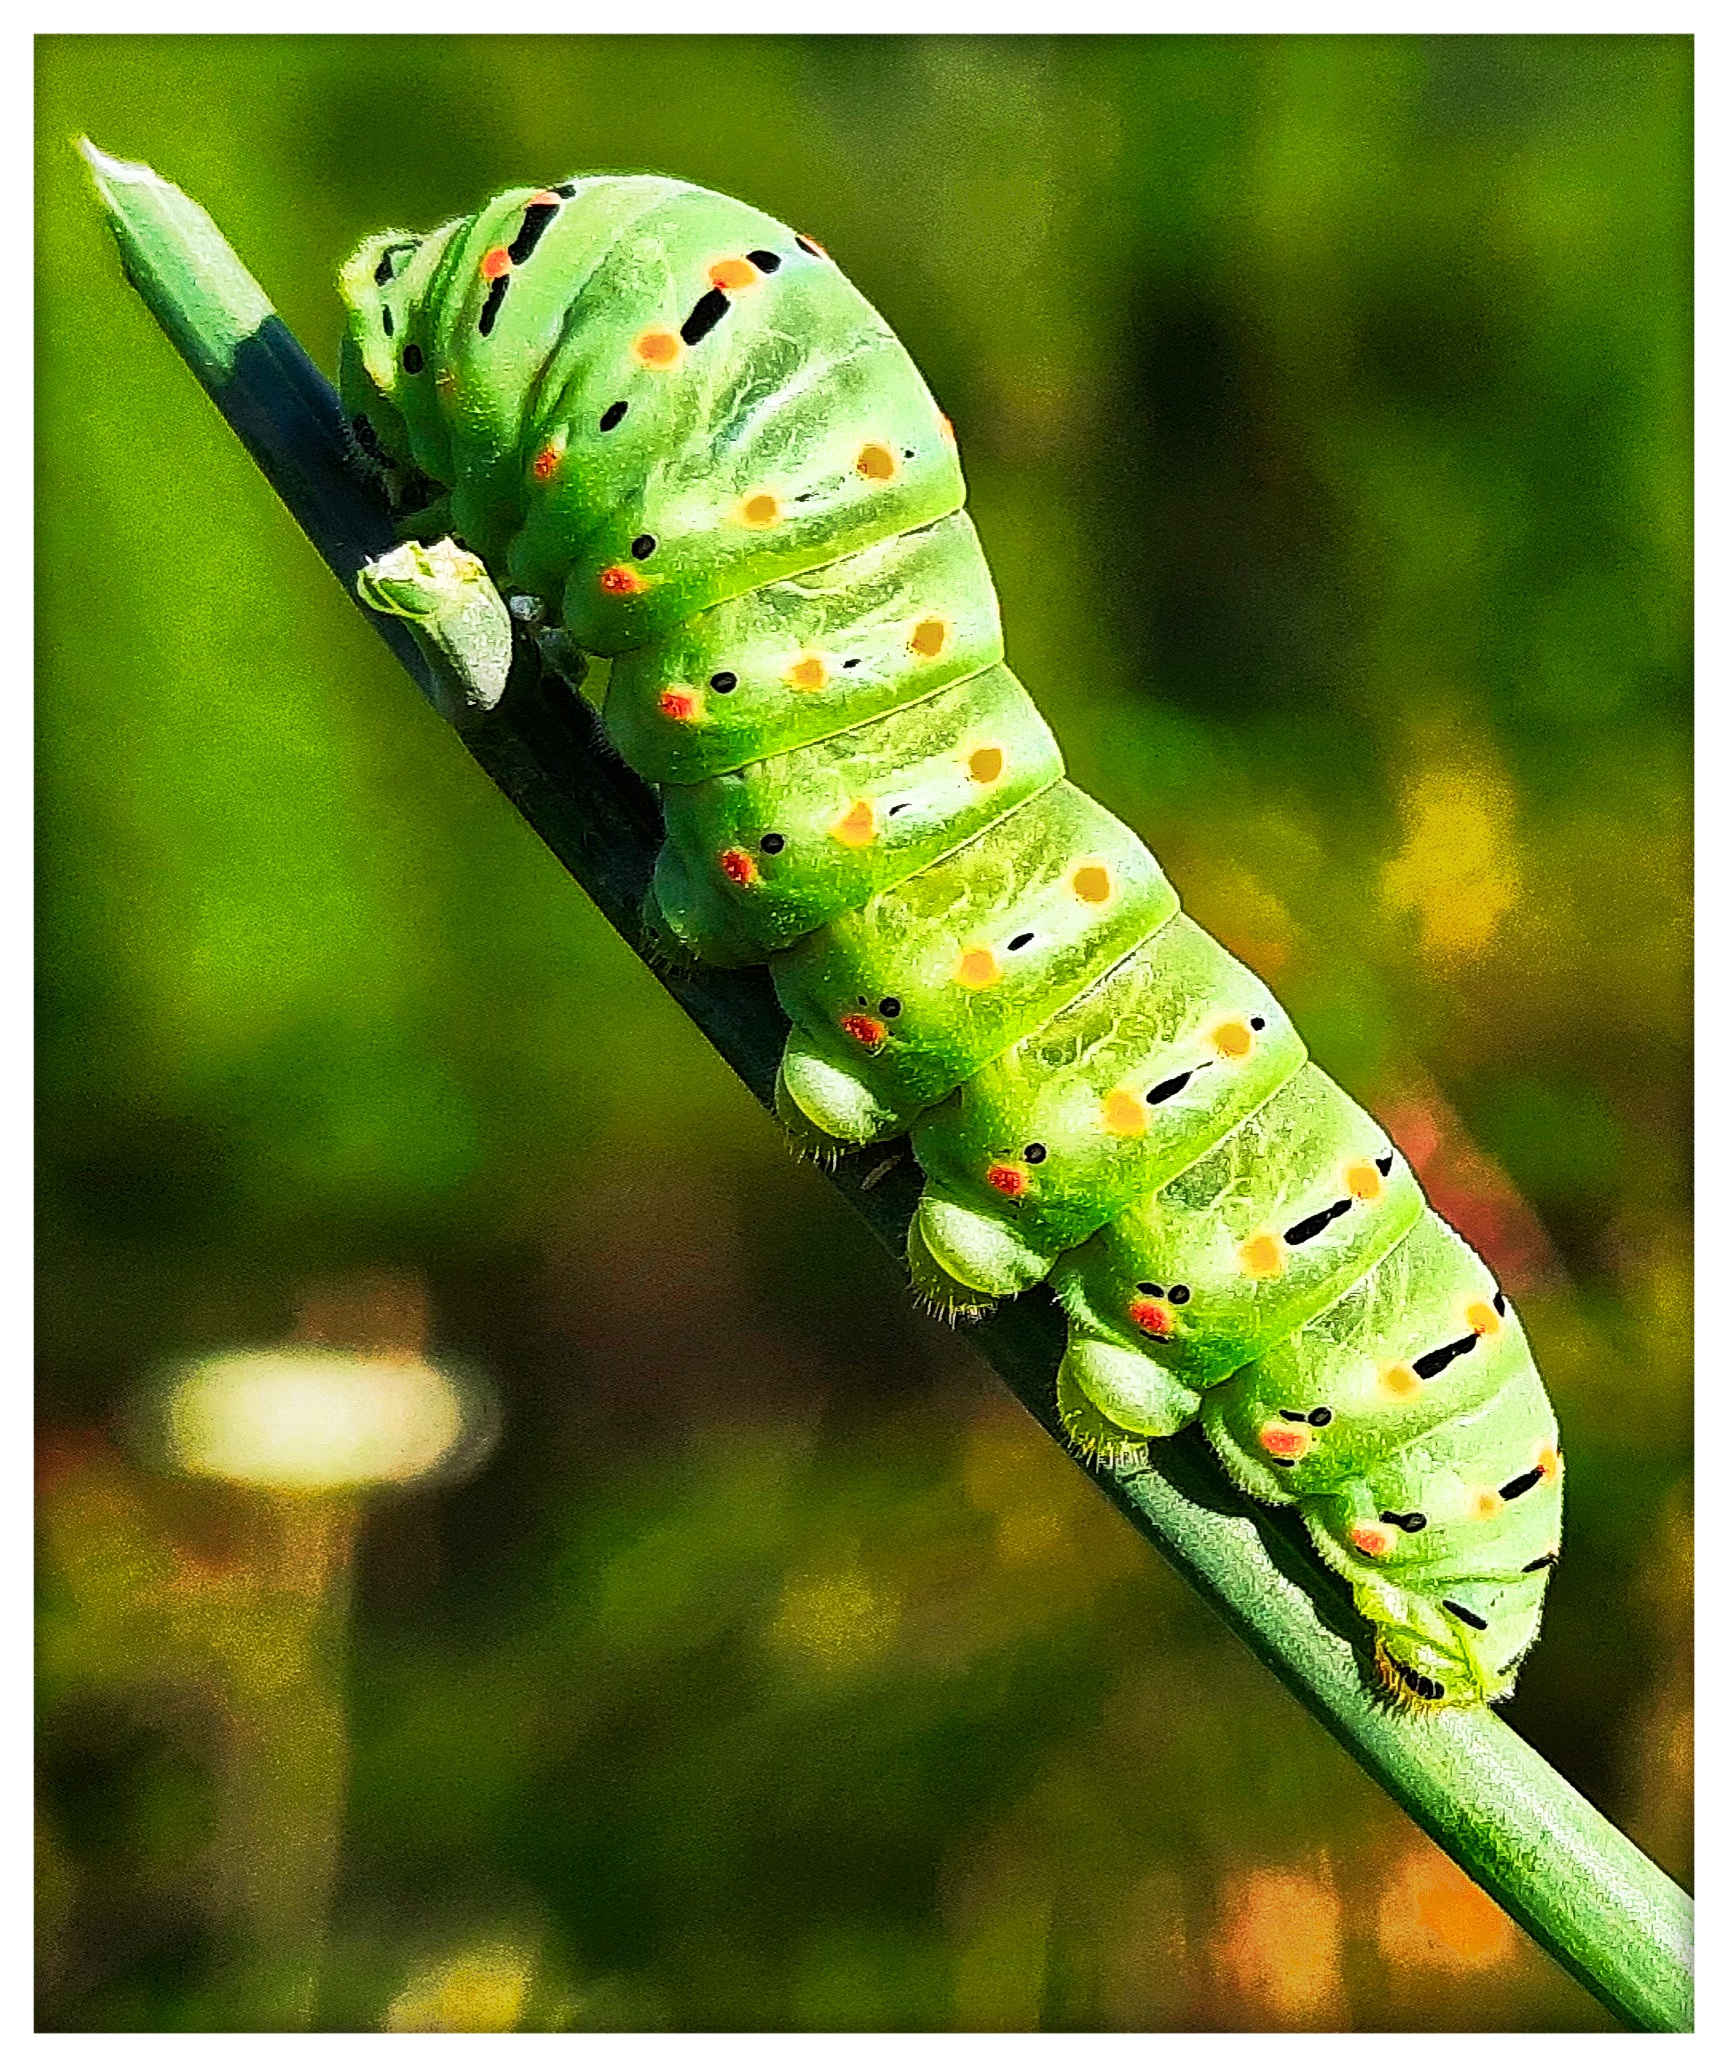  Macaon caterpillar...